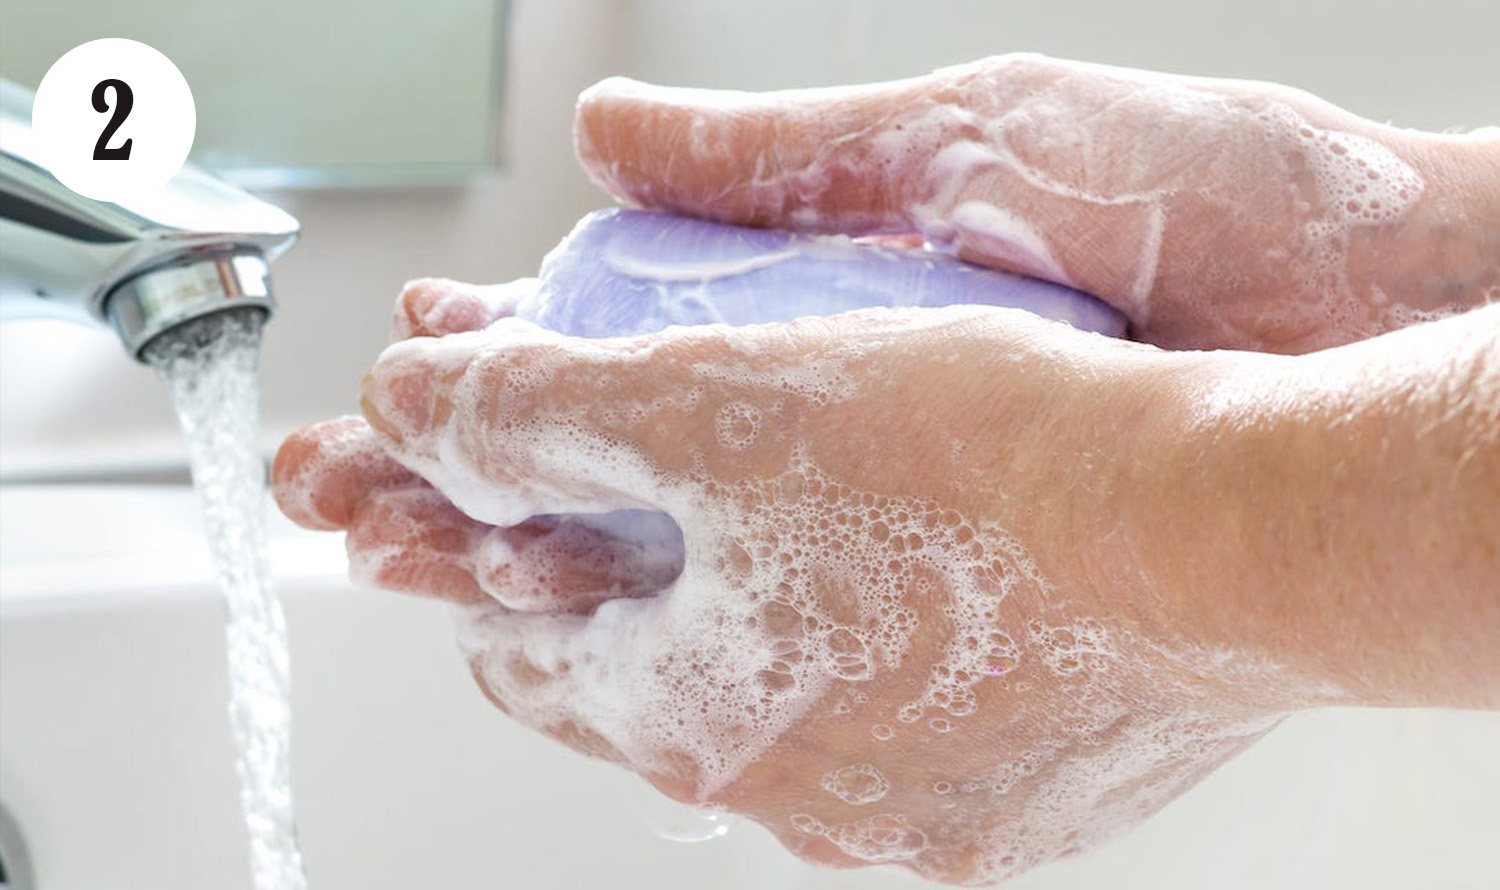 Мытье следуй. Мытье рук. Мытье рук с мылом. Мыло для рук. Моем руки с мылом.